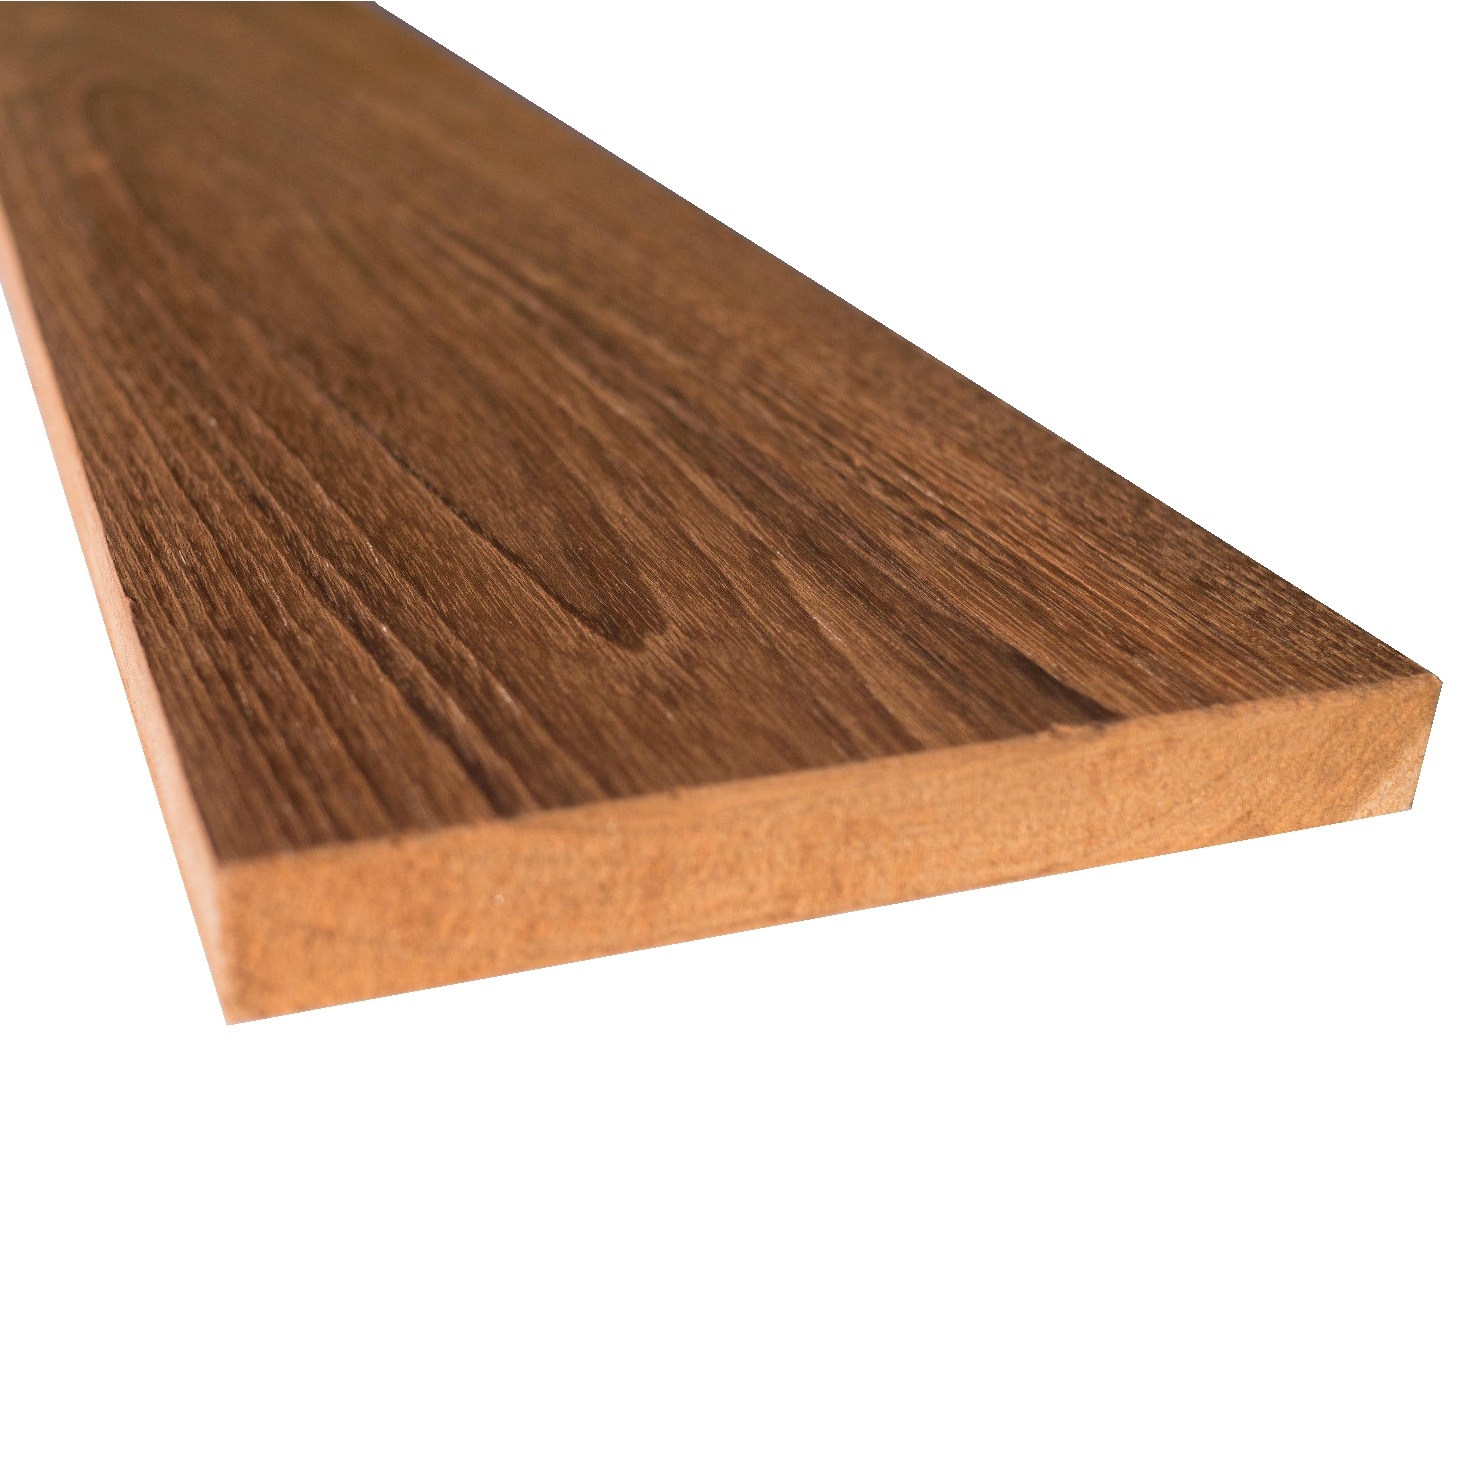 Tavola legno Teak piallata mm 21 x 140 x 2400